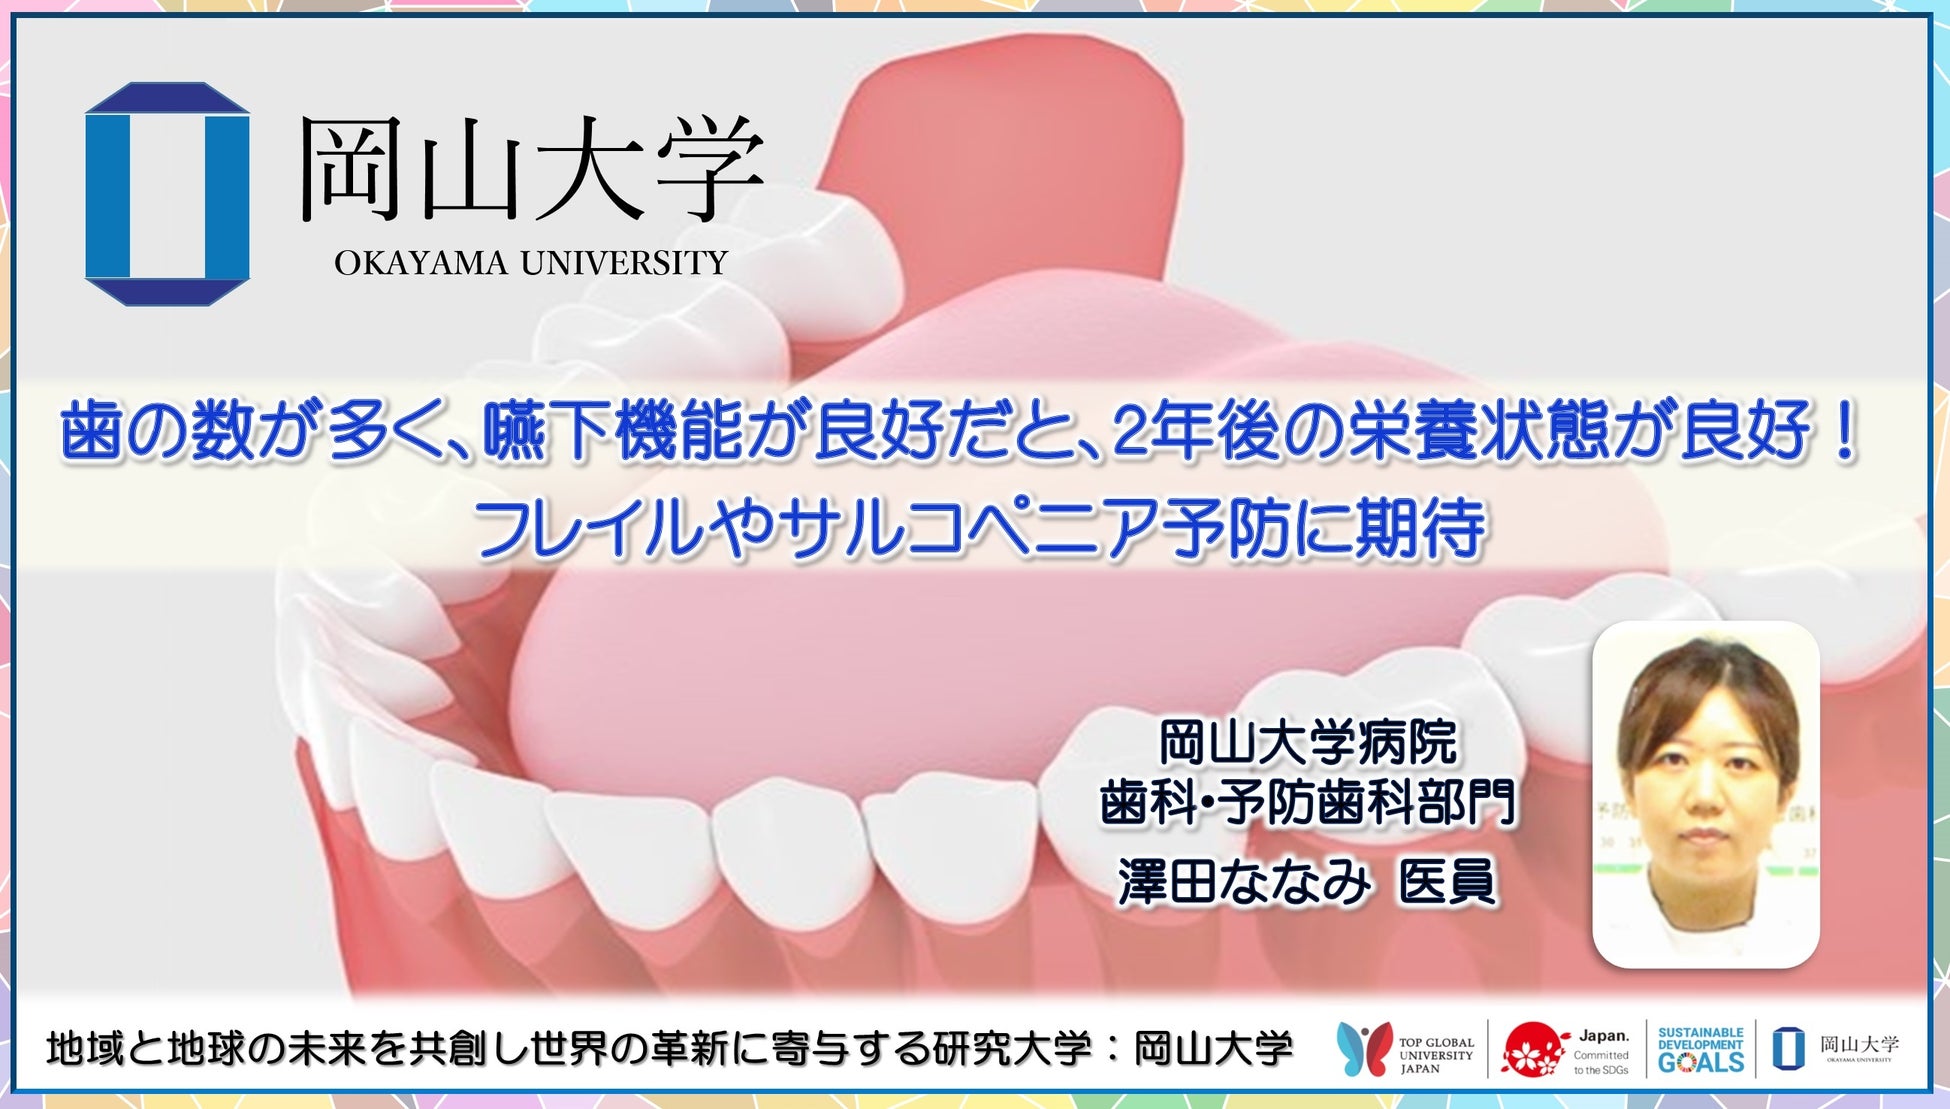 【岡山大学】歯の数が多く、嚥下機能が良好だと、2年後の栄養状態が良好！フレイルやサルコペニア予防に期待